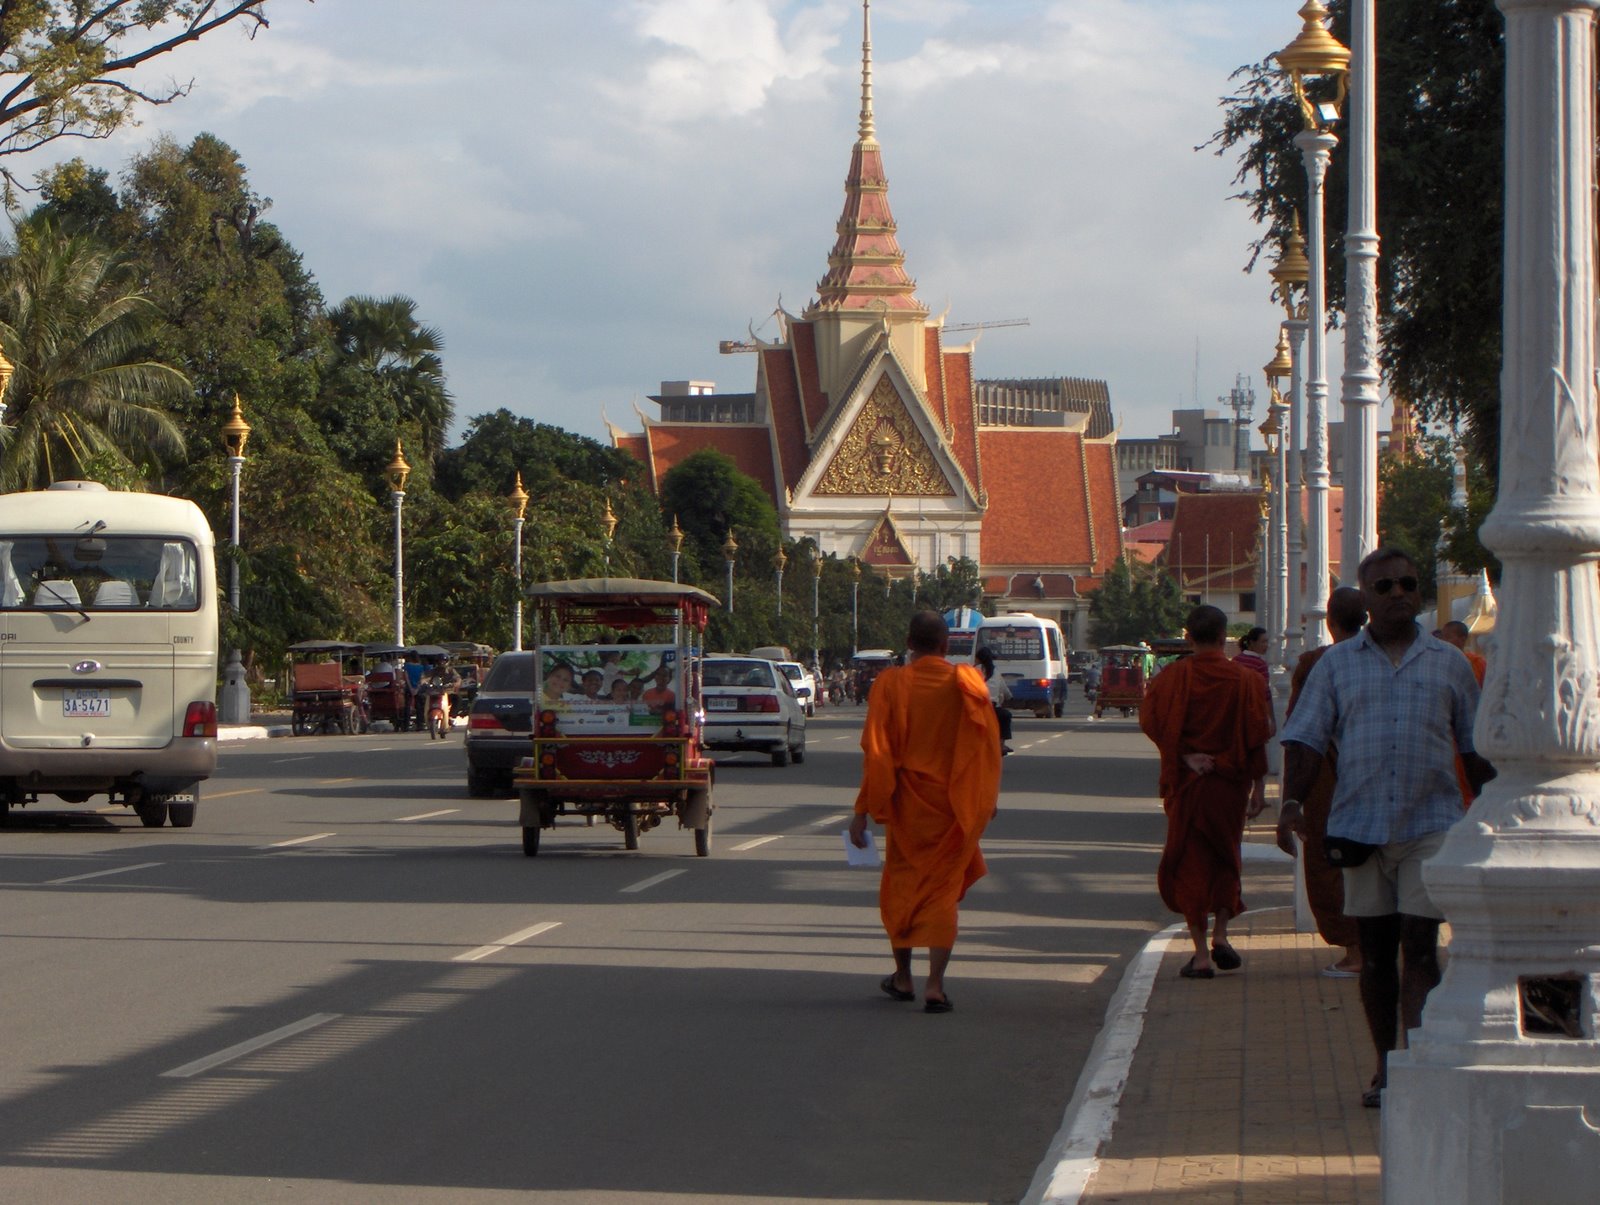 [Monks+on+street+in+Phnom+Penh.JPG]